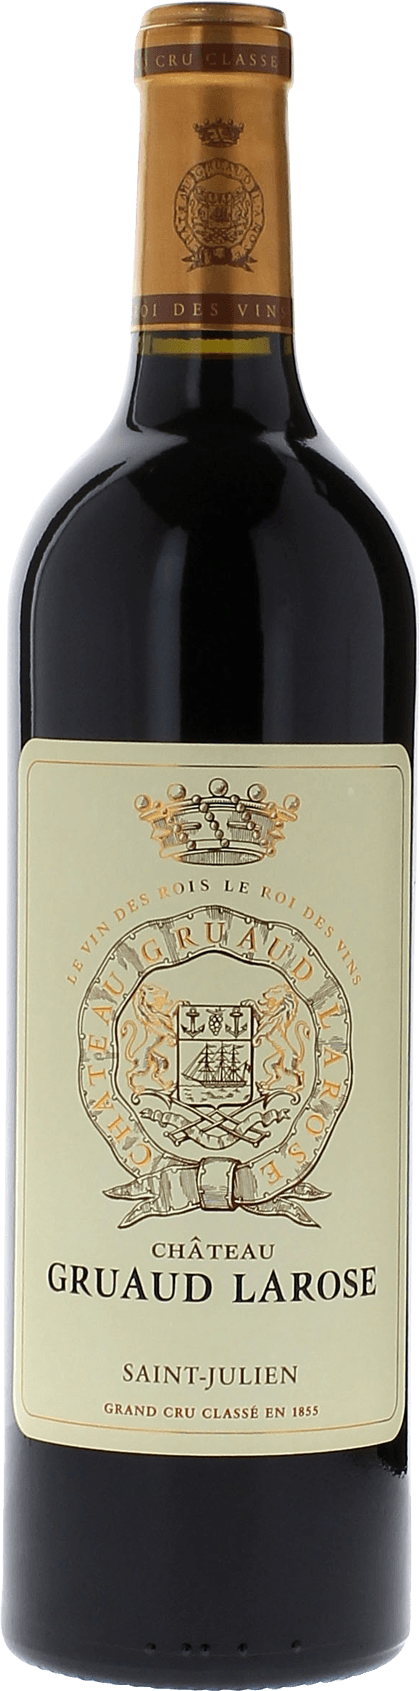 Gruaud larose 2016 2me Grand cru class Saint-Julien, Bordeaux rouge